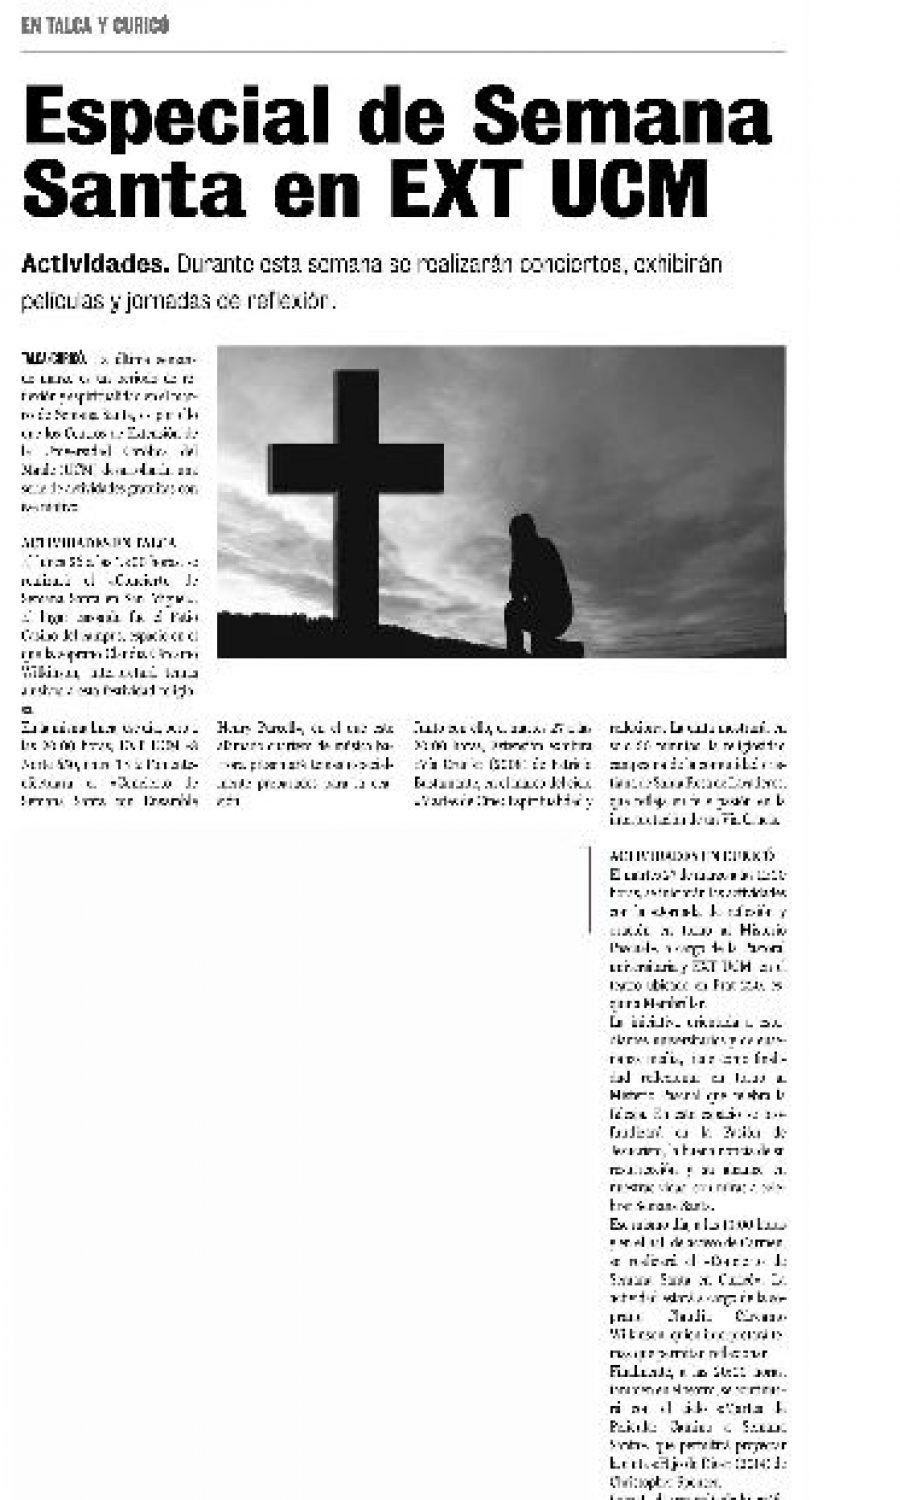 26 de marzo en Diario La Prensa: “Especial de Semana Santa en EXT UCM”